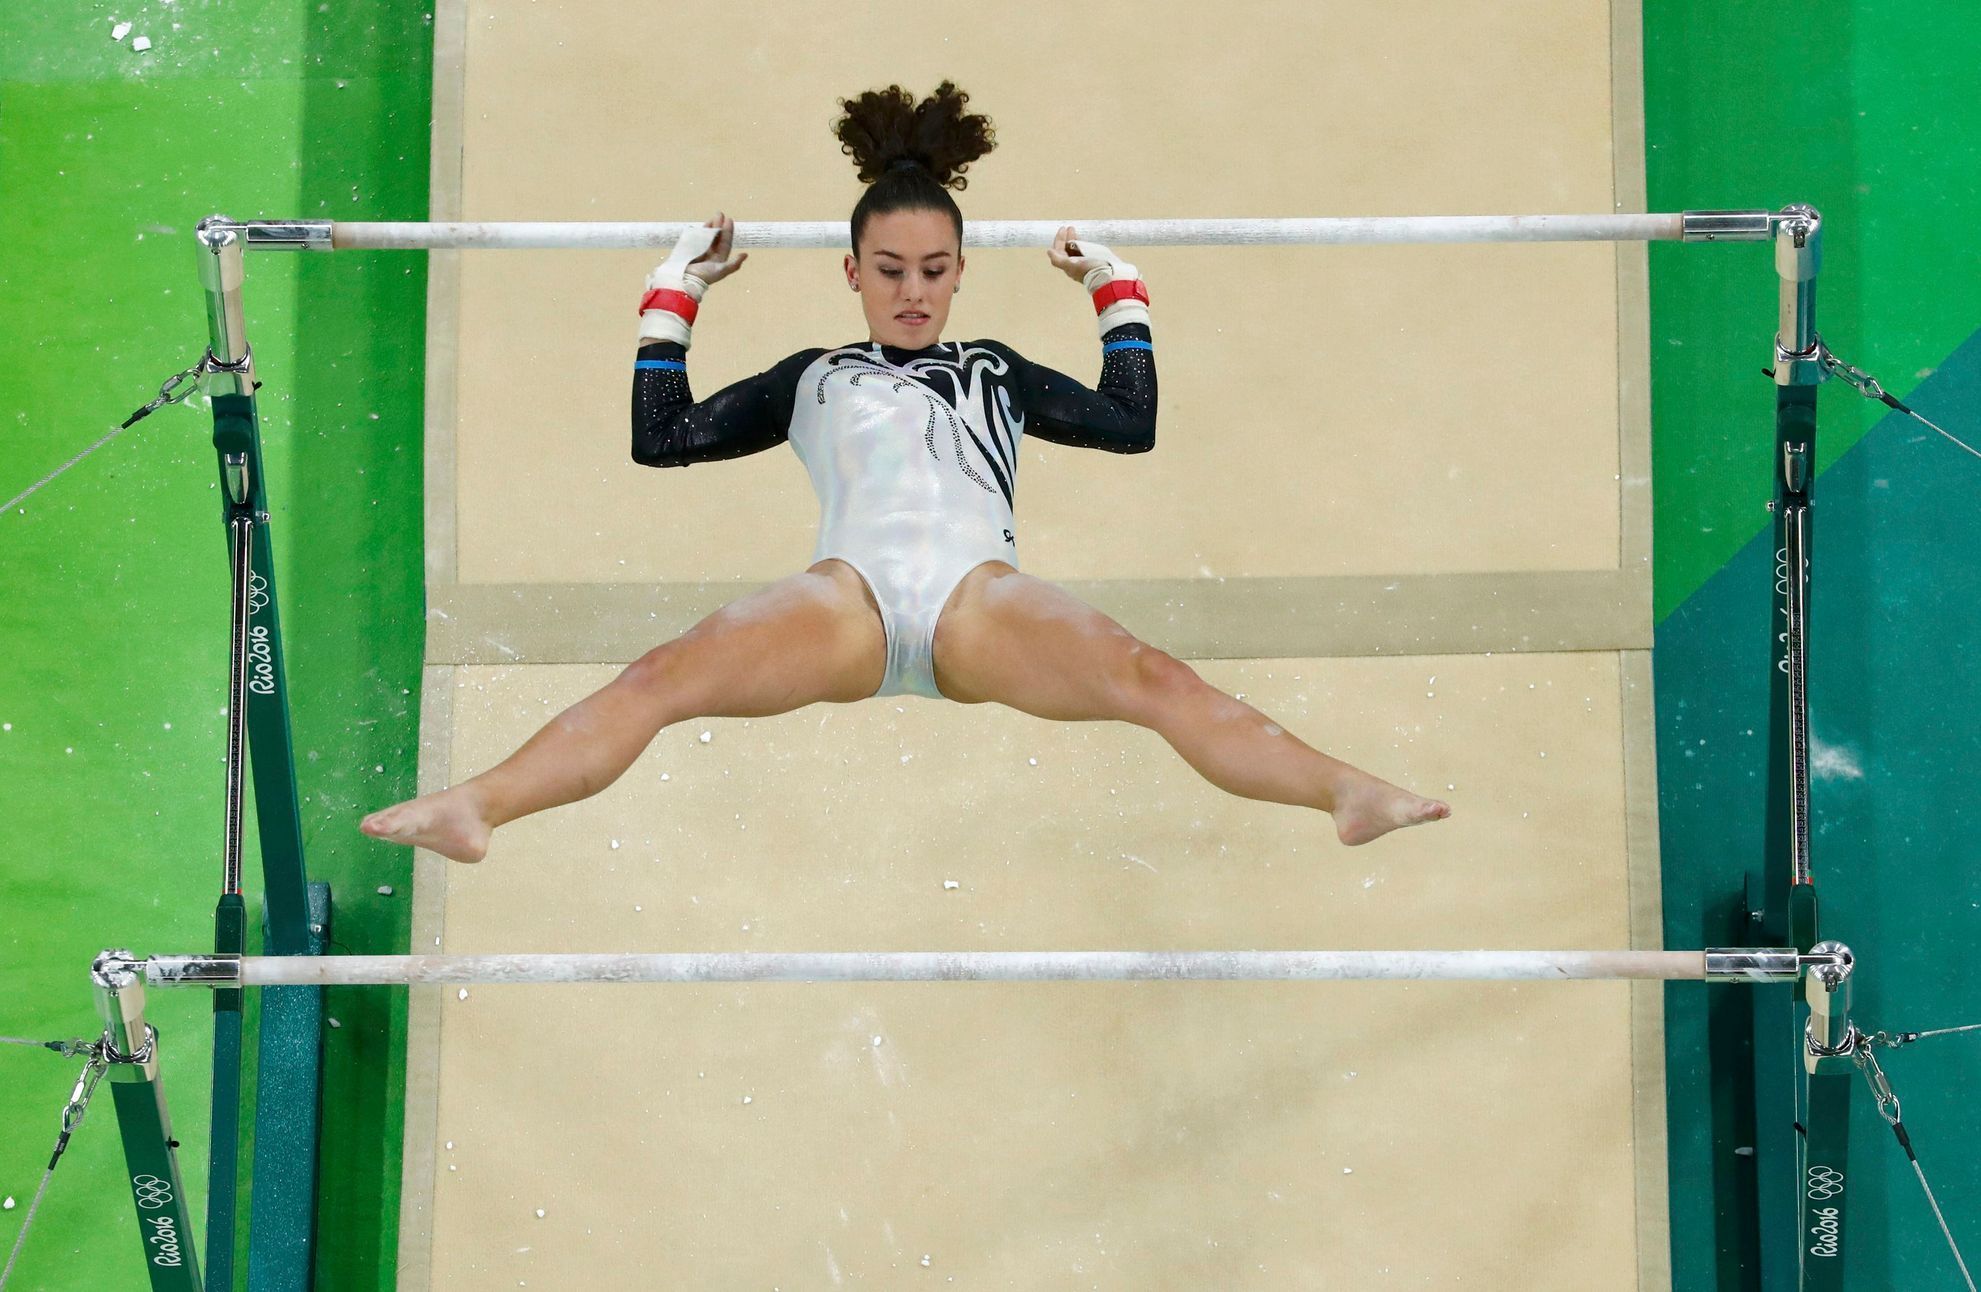 OH 2016, sportovní gymnastika: Courtney McGregorová, Nový Zéland